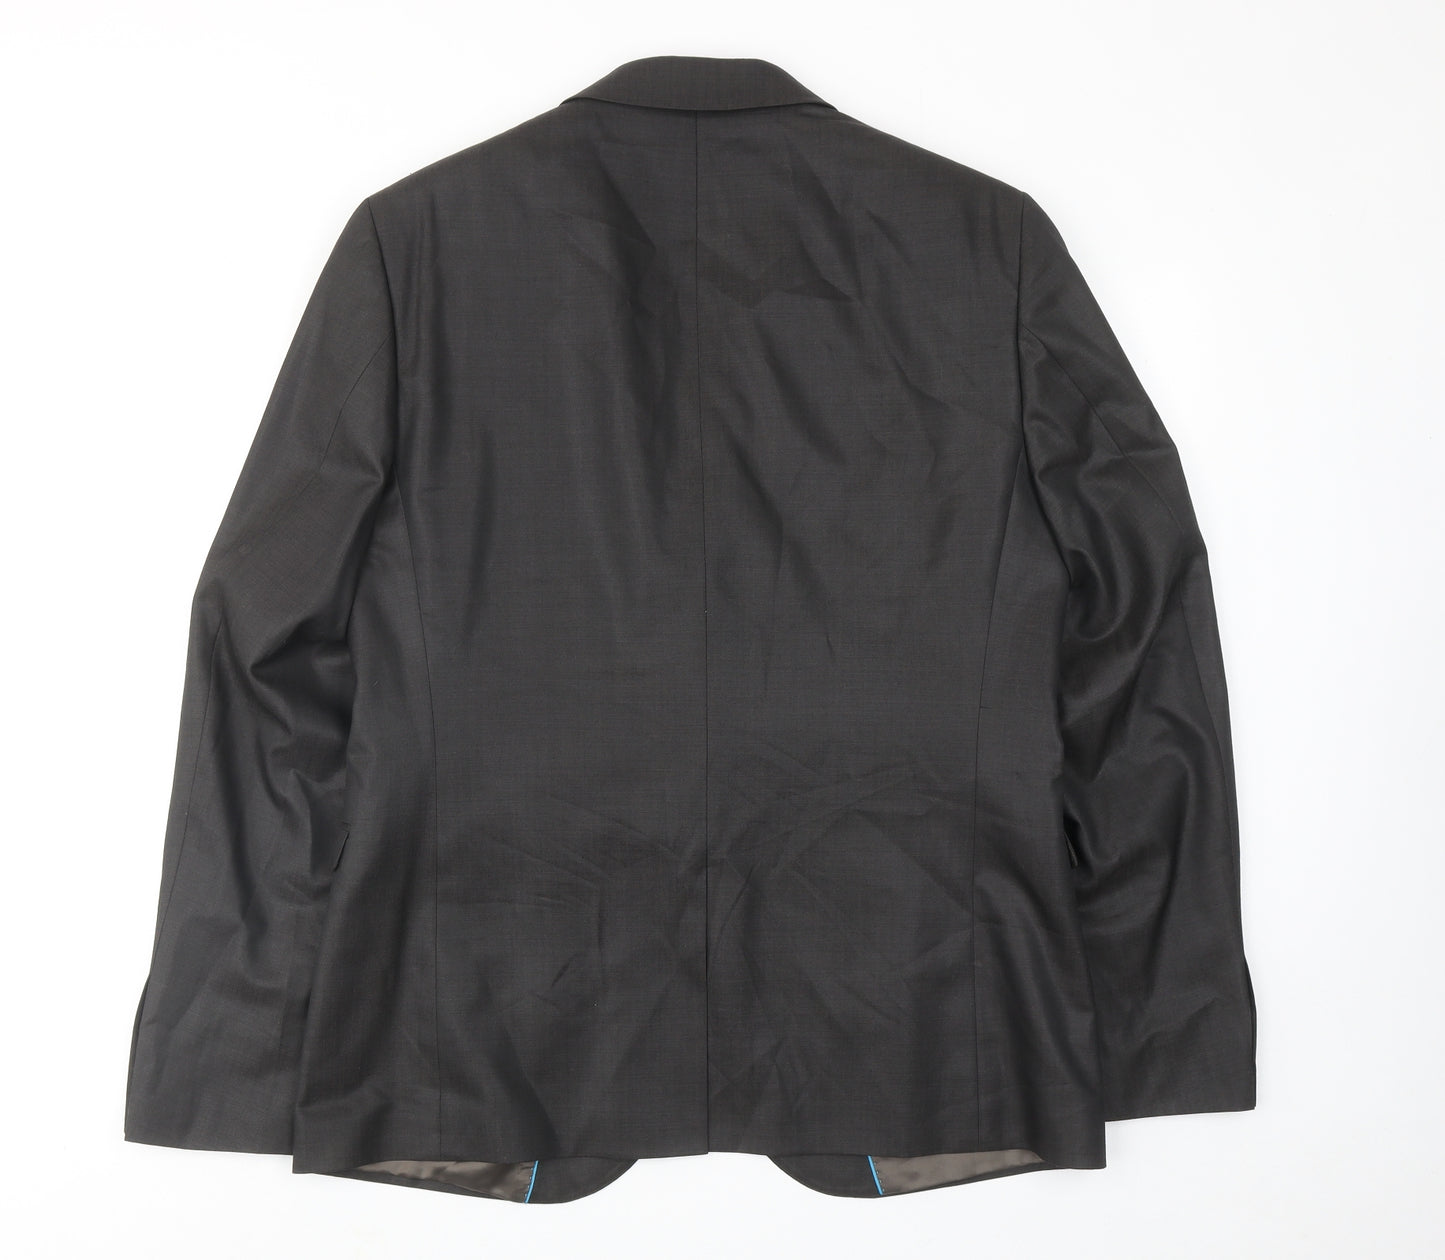 Urban Mens Grey Wool Jacket Suit Jacket Size 42 Regular